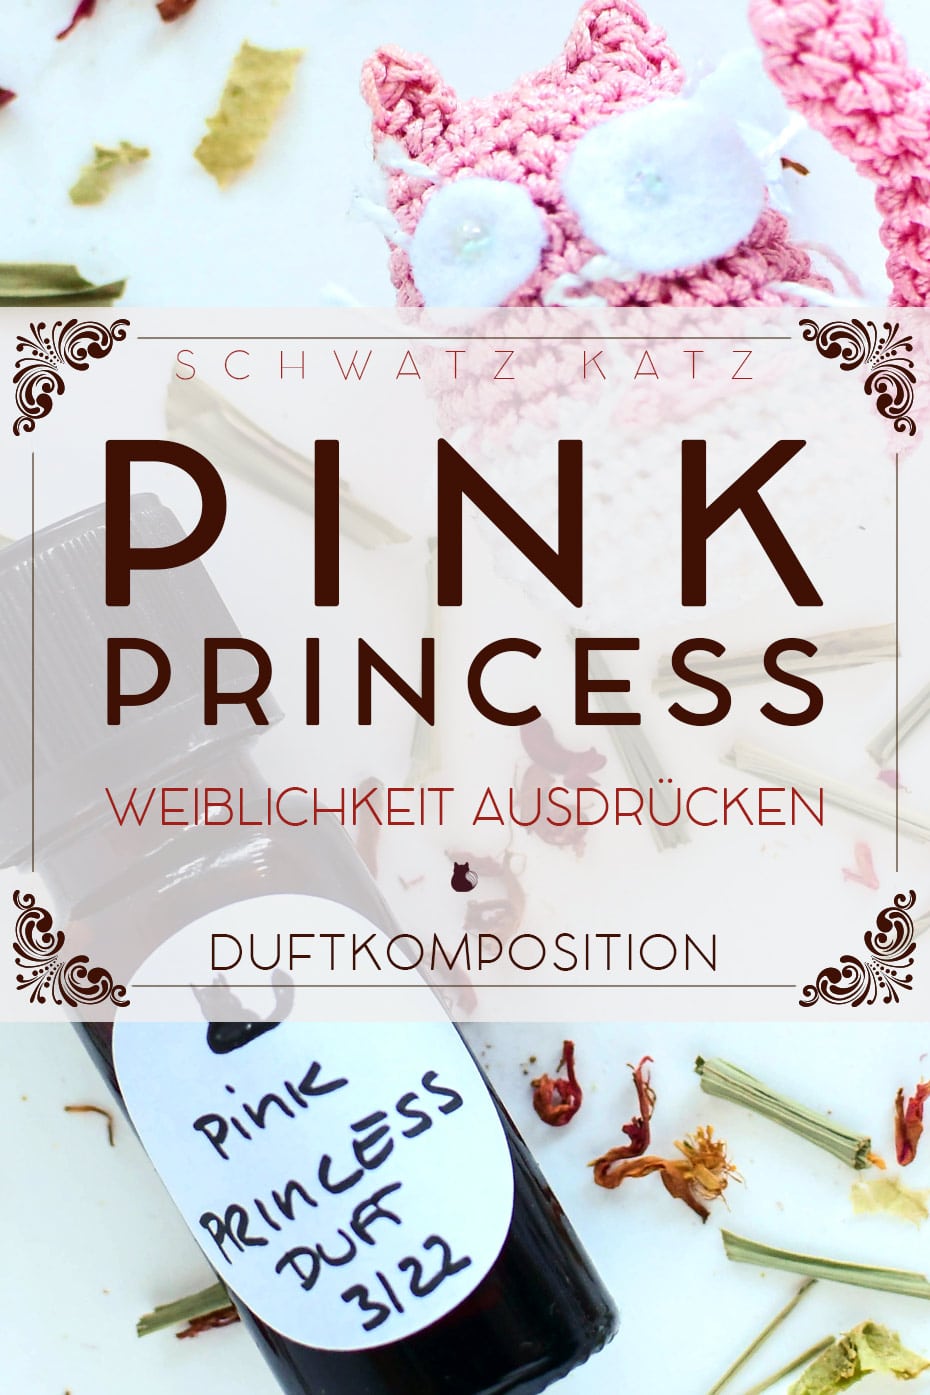 Duftkomposition »Pink Princess« zur Stärkung unserer weiblichen Seite | Schwatz Katz